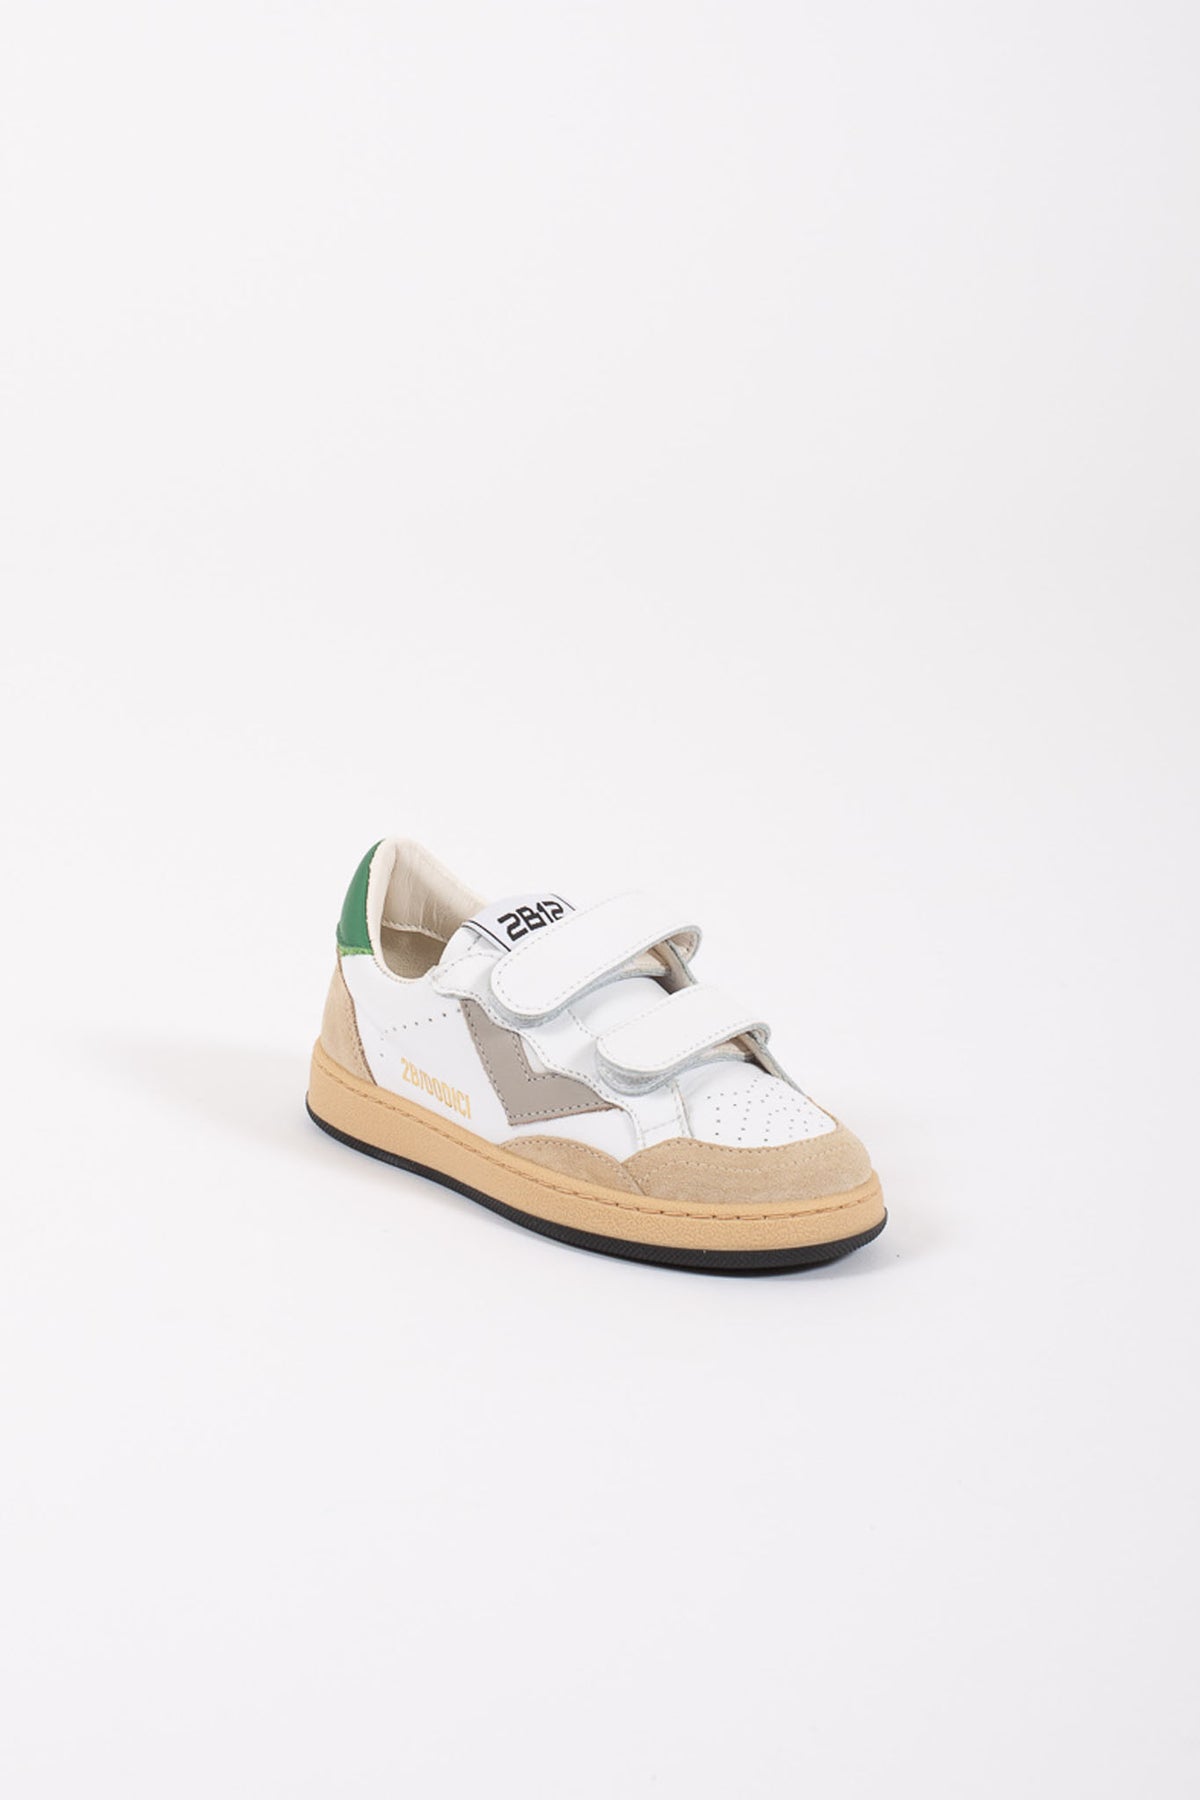 2b12 Sneakers Strappo Retro Verde Bianco Bambino - 2